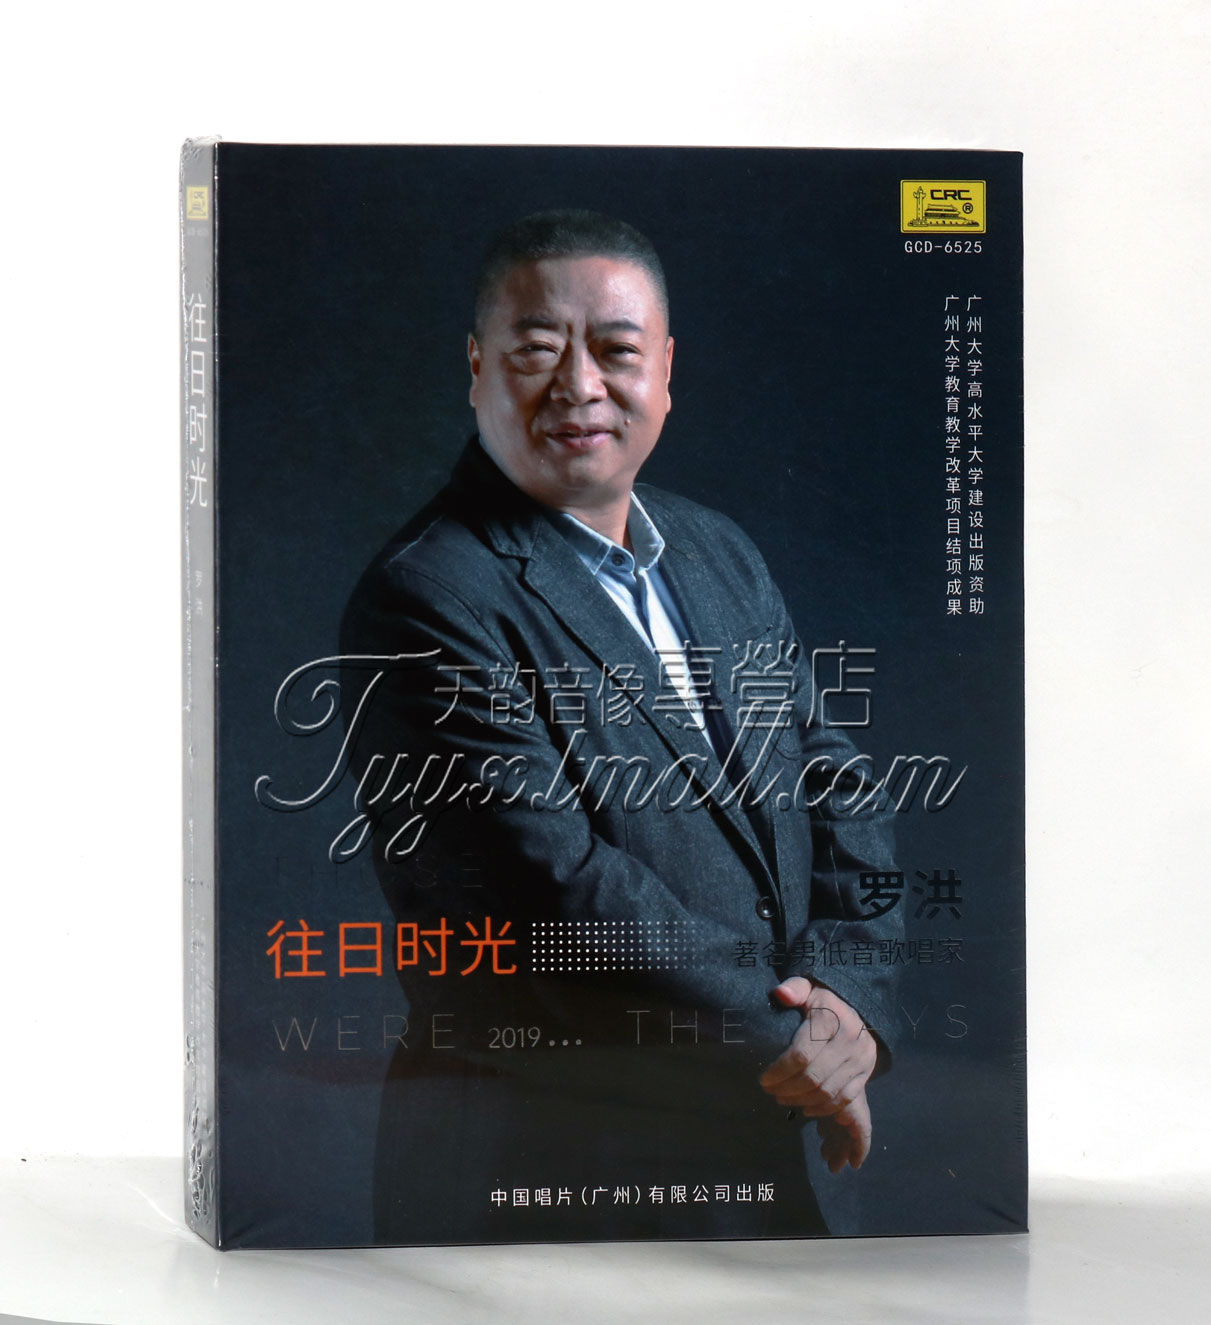 正版 中国唱片 往日时光 罗洪 著名男低音歌唱家 1CD